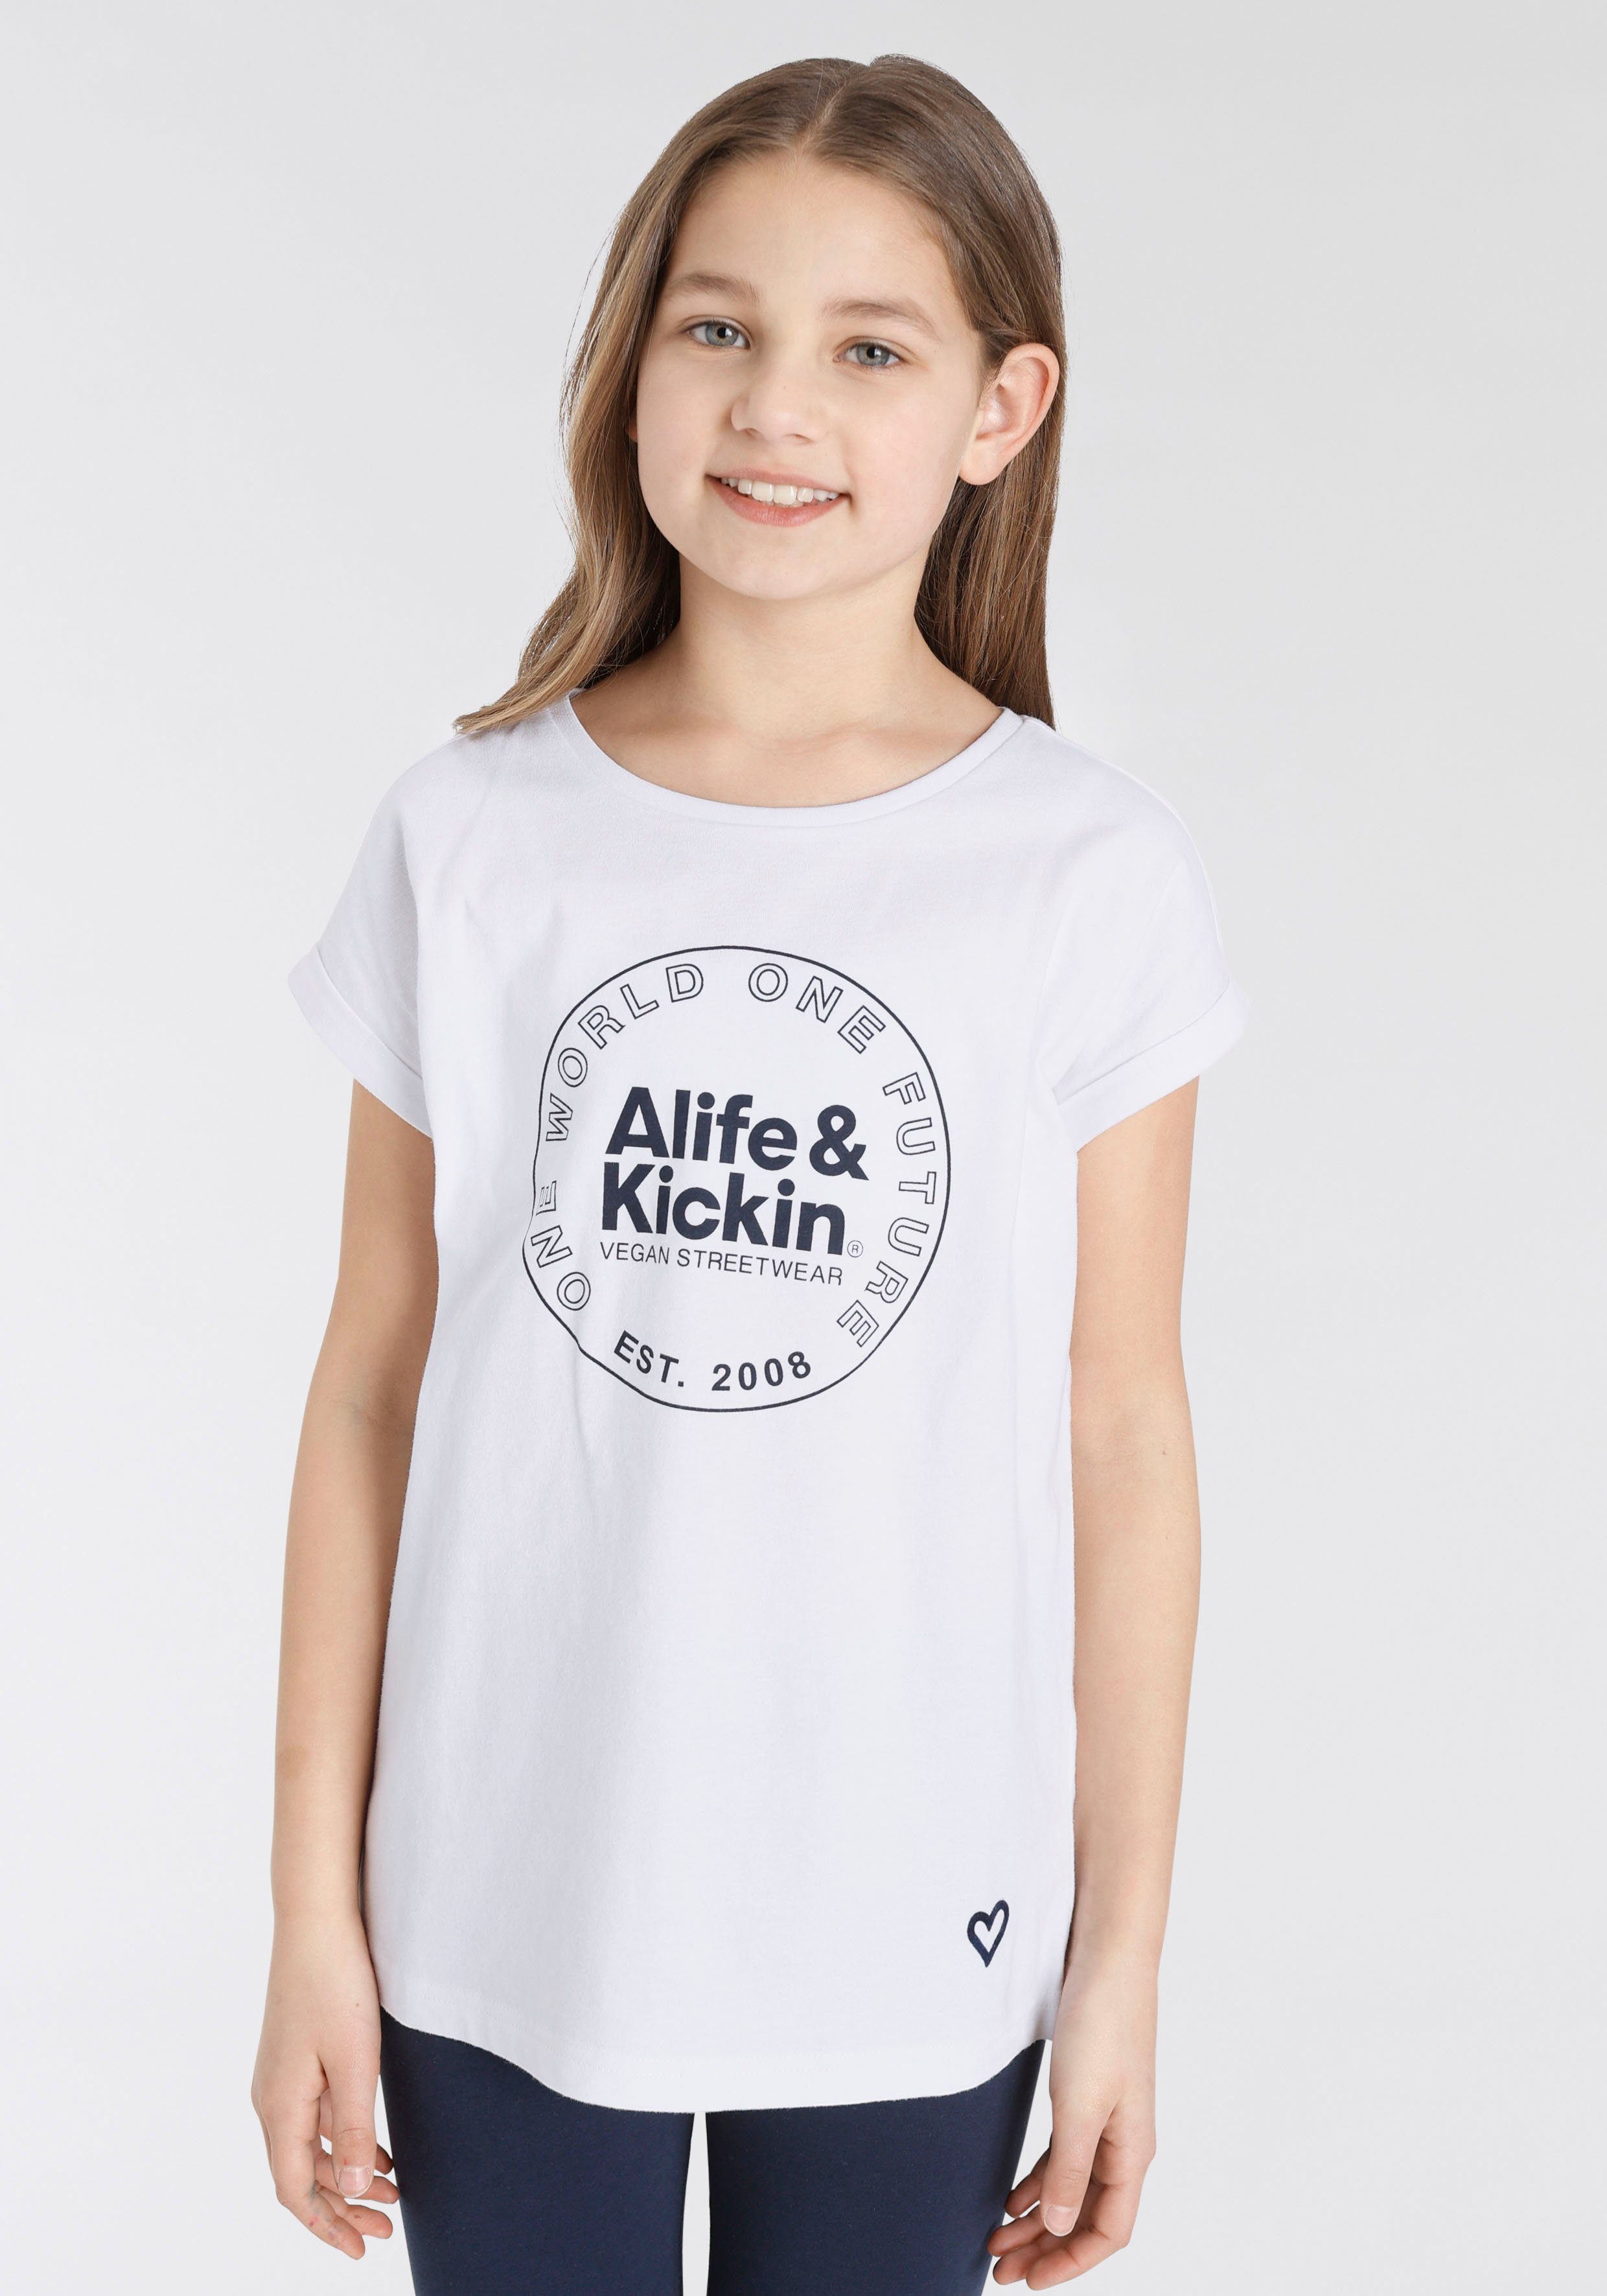 & mit NEUE Kickin Logo MARKE! Alife & T-Shirt für Alife Kickin Druck, Kids.